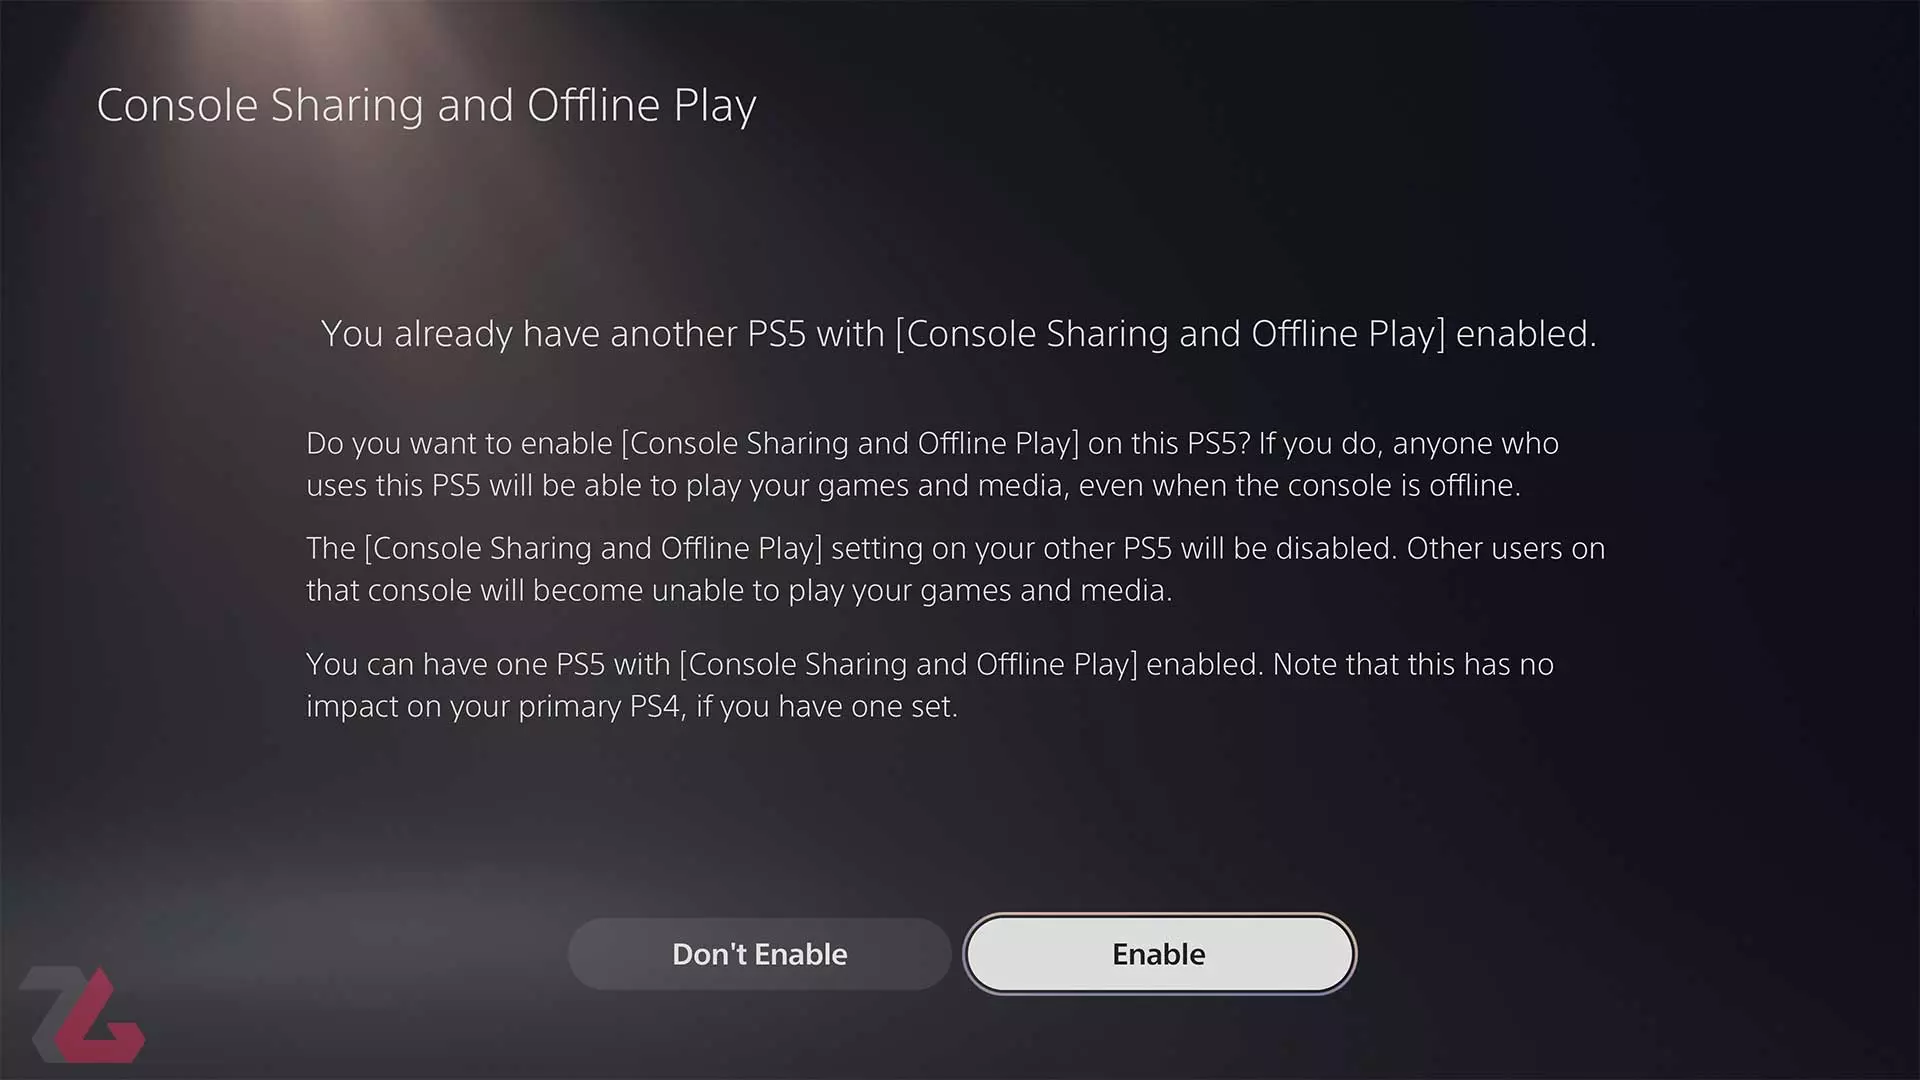 فعال کردن گزینه Console Sharing and Offline Play برای اکانت پلی استیشن در کنسول PS5 سونی